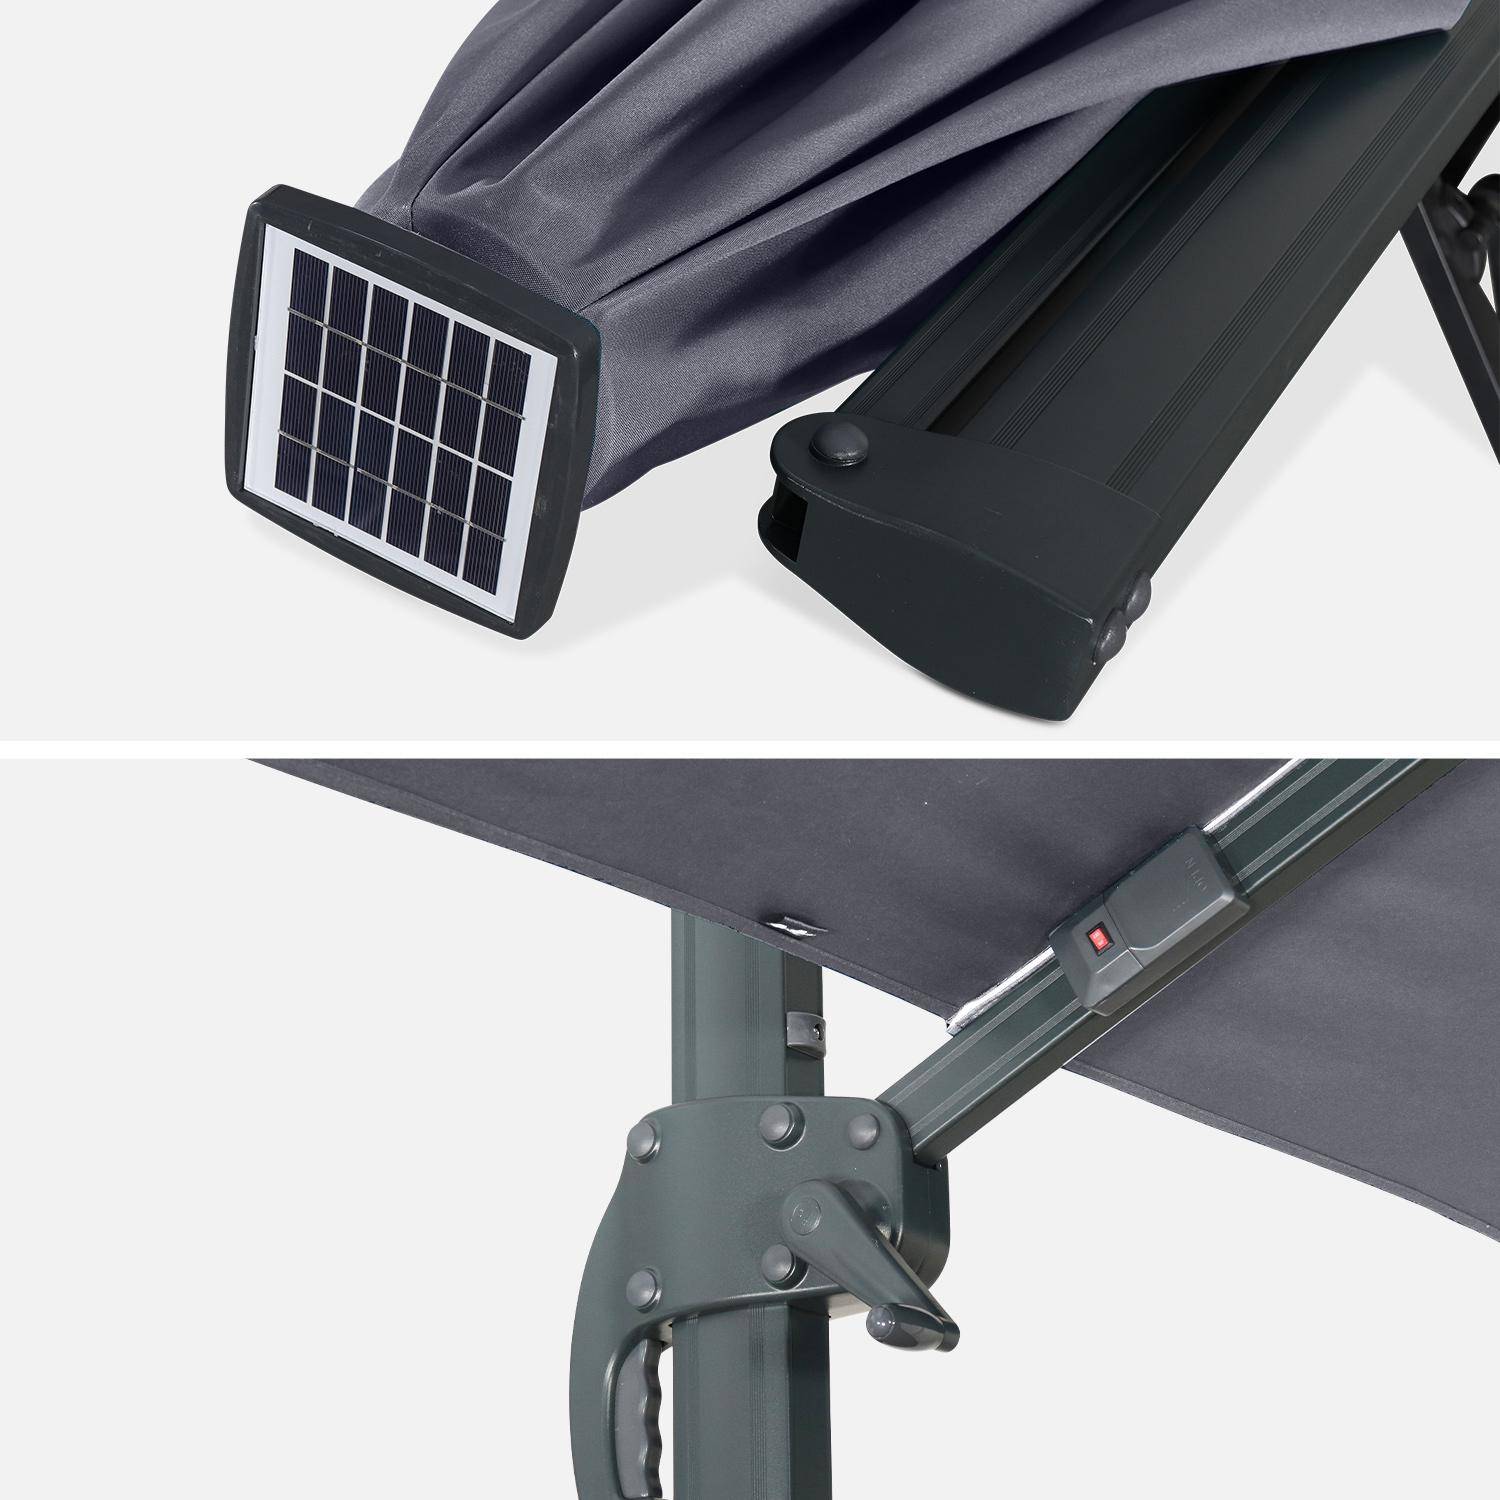 Qualitativ hochwertiger rechteckiger LED-Solar- Sonnenschirm 3 x 4 m - Luce Grau - kippbar, faltbar und 360 ° drehbar, Solarladegerät,sweeek,Photo7